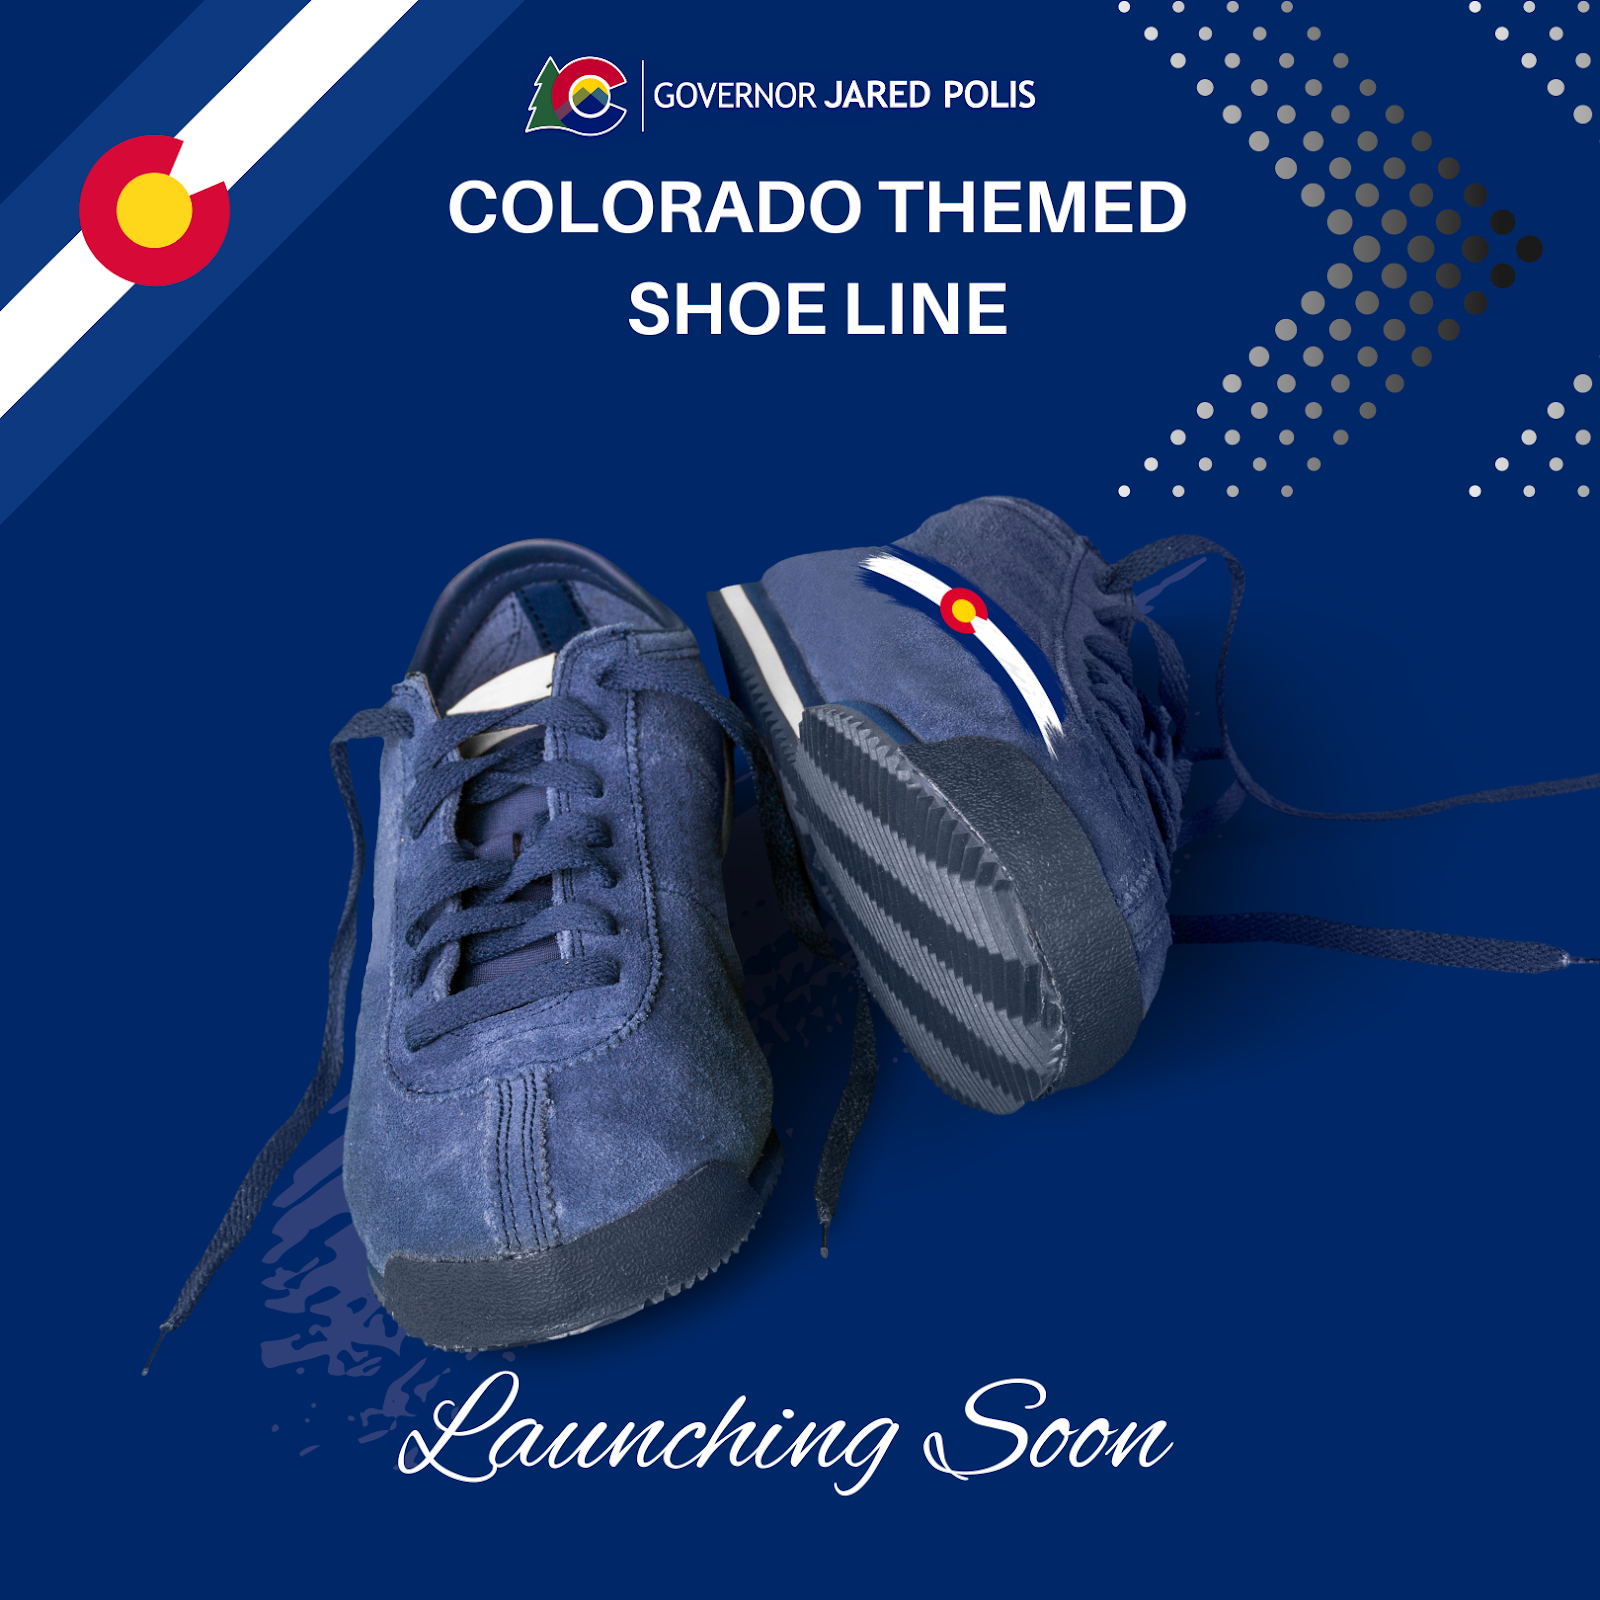 Colorado-themed shoe line. Dark blue suede casual shoes with Colorado logo